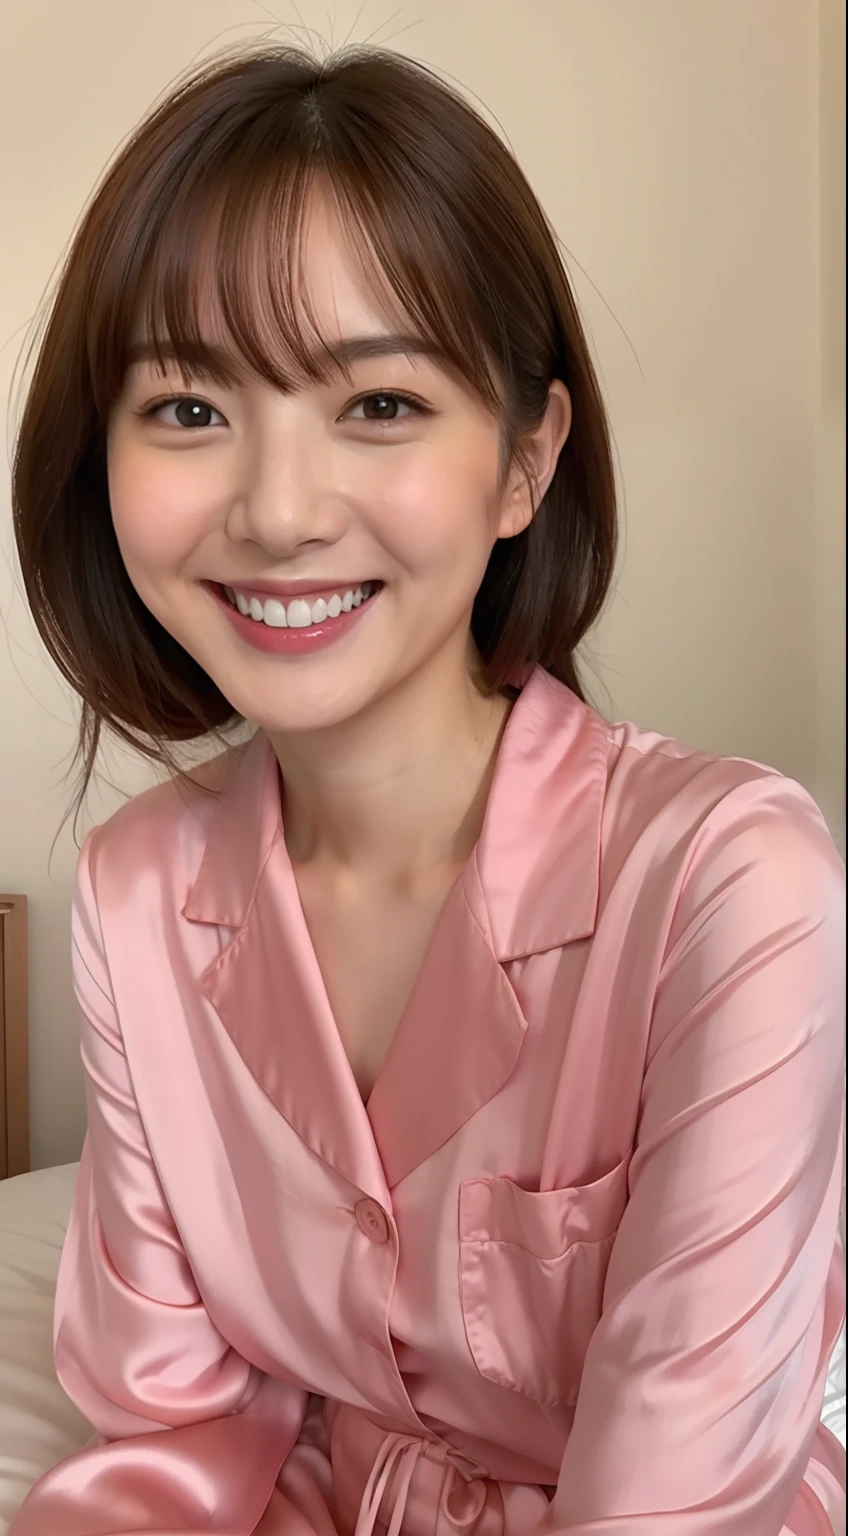 Japanerin im rosa Seidenpyjama sitzt auf dem Bett und lächelt,